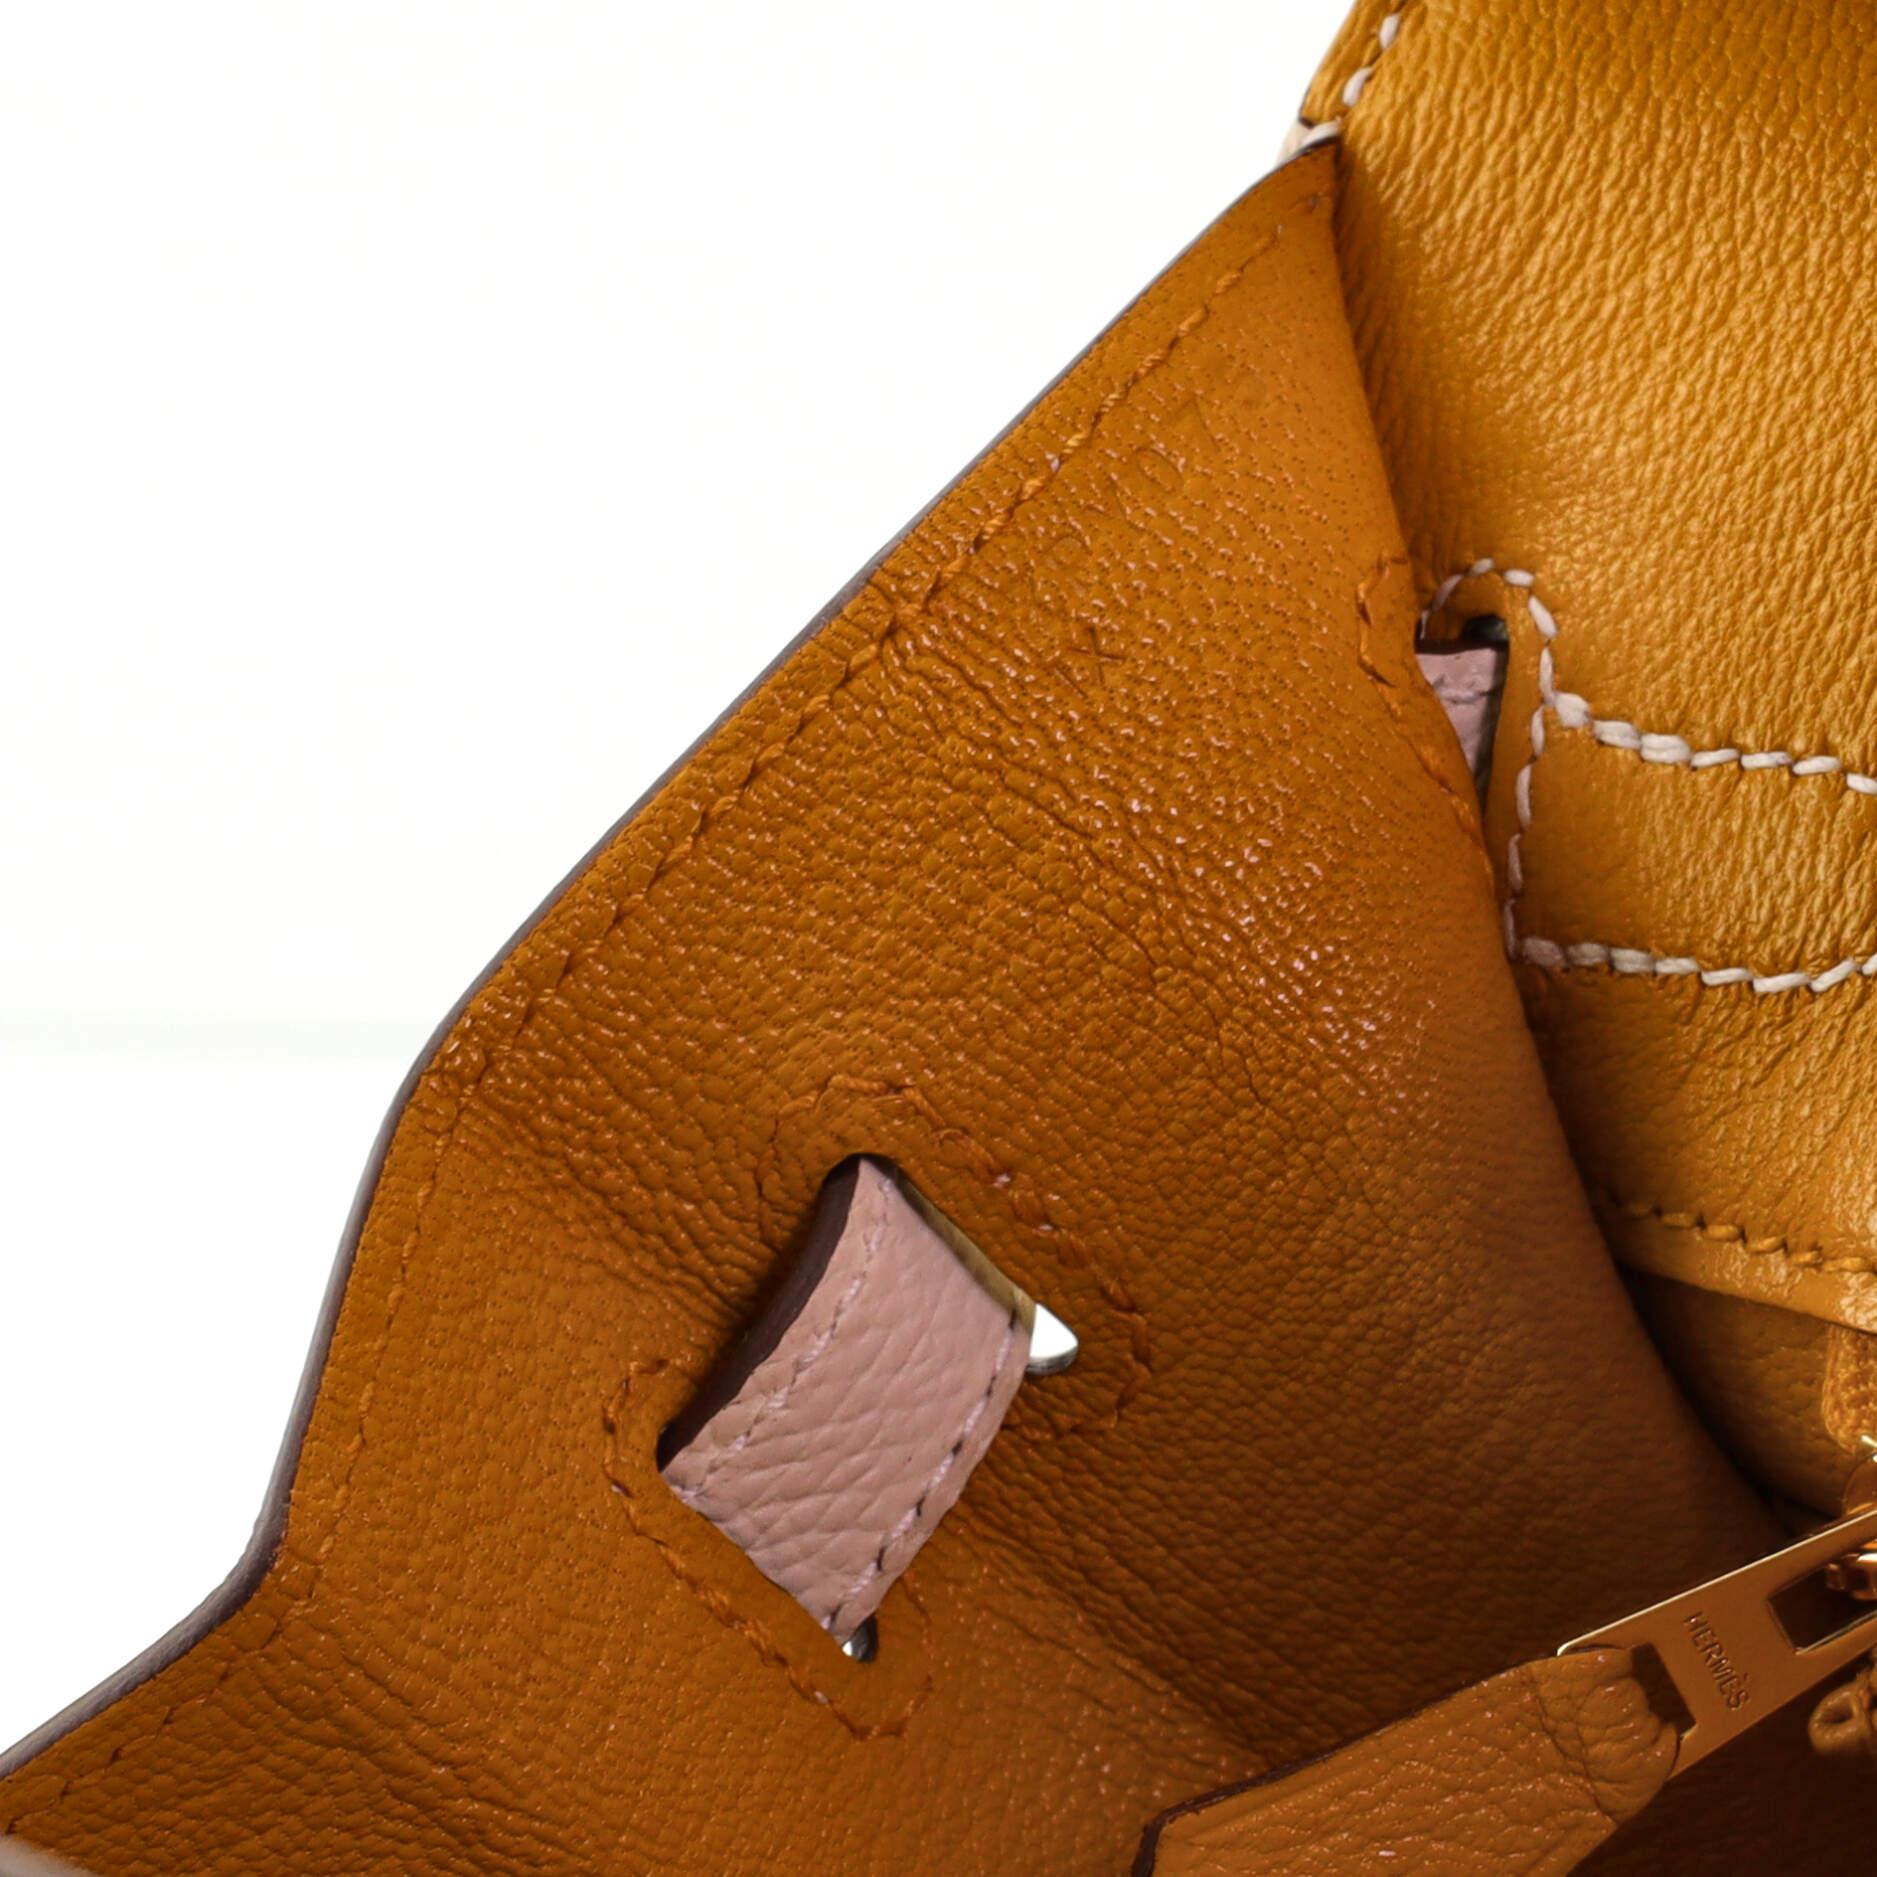 Women's or Men's Hermes Birkin Sellier Bag Bicolor Epsom with Brushed Gold Hardware 25